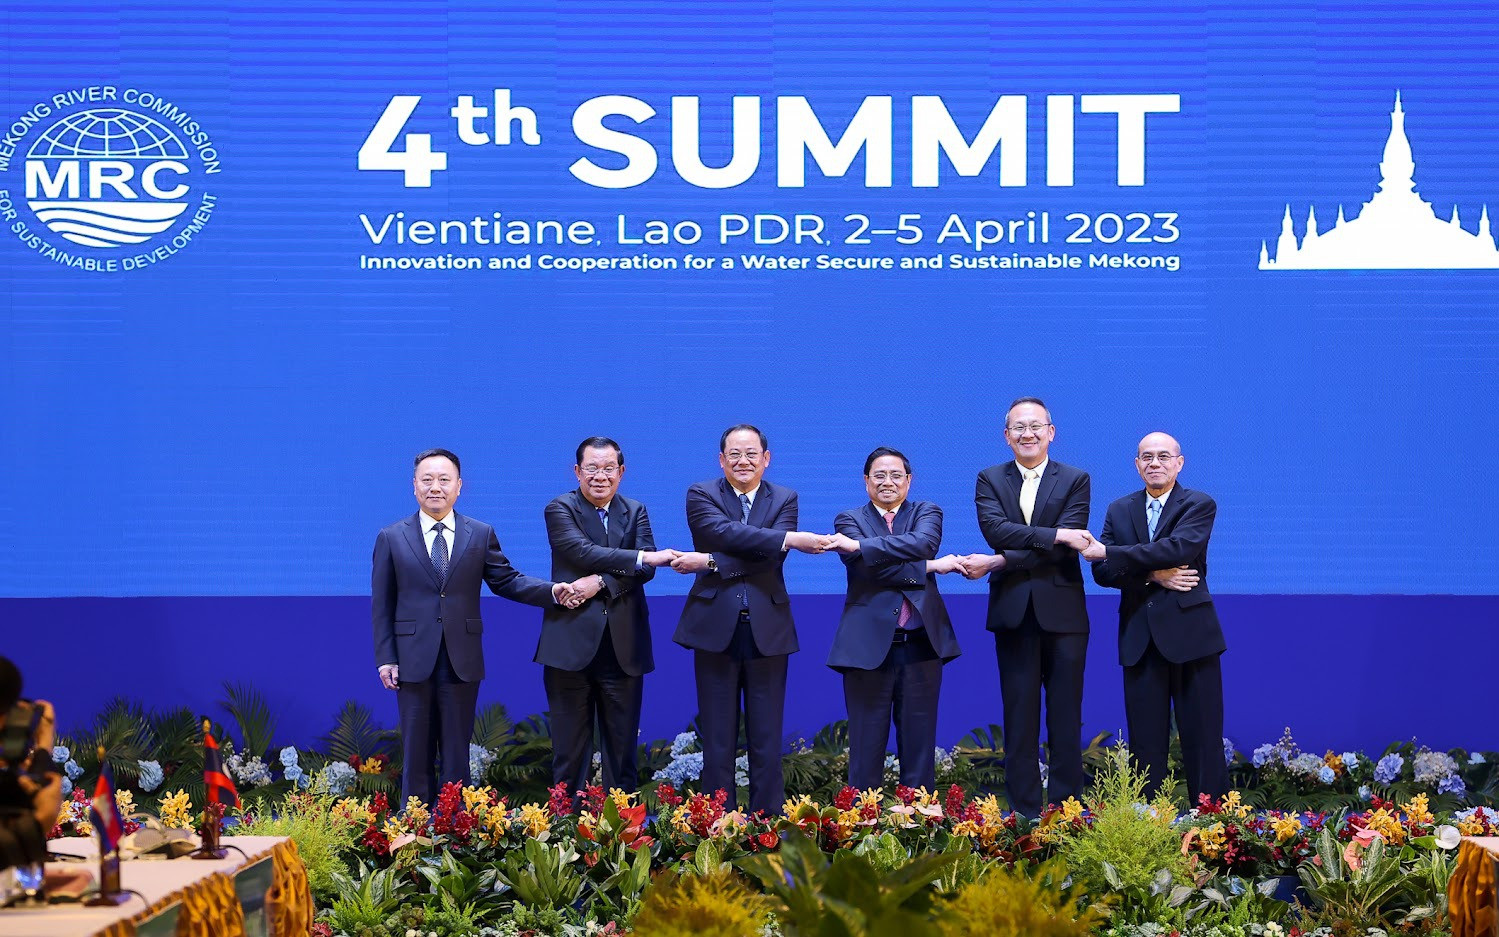 Tuyên bố chung Vientiane đề ra 7 lĩnh vực hành động ưu tiên